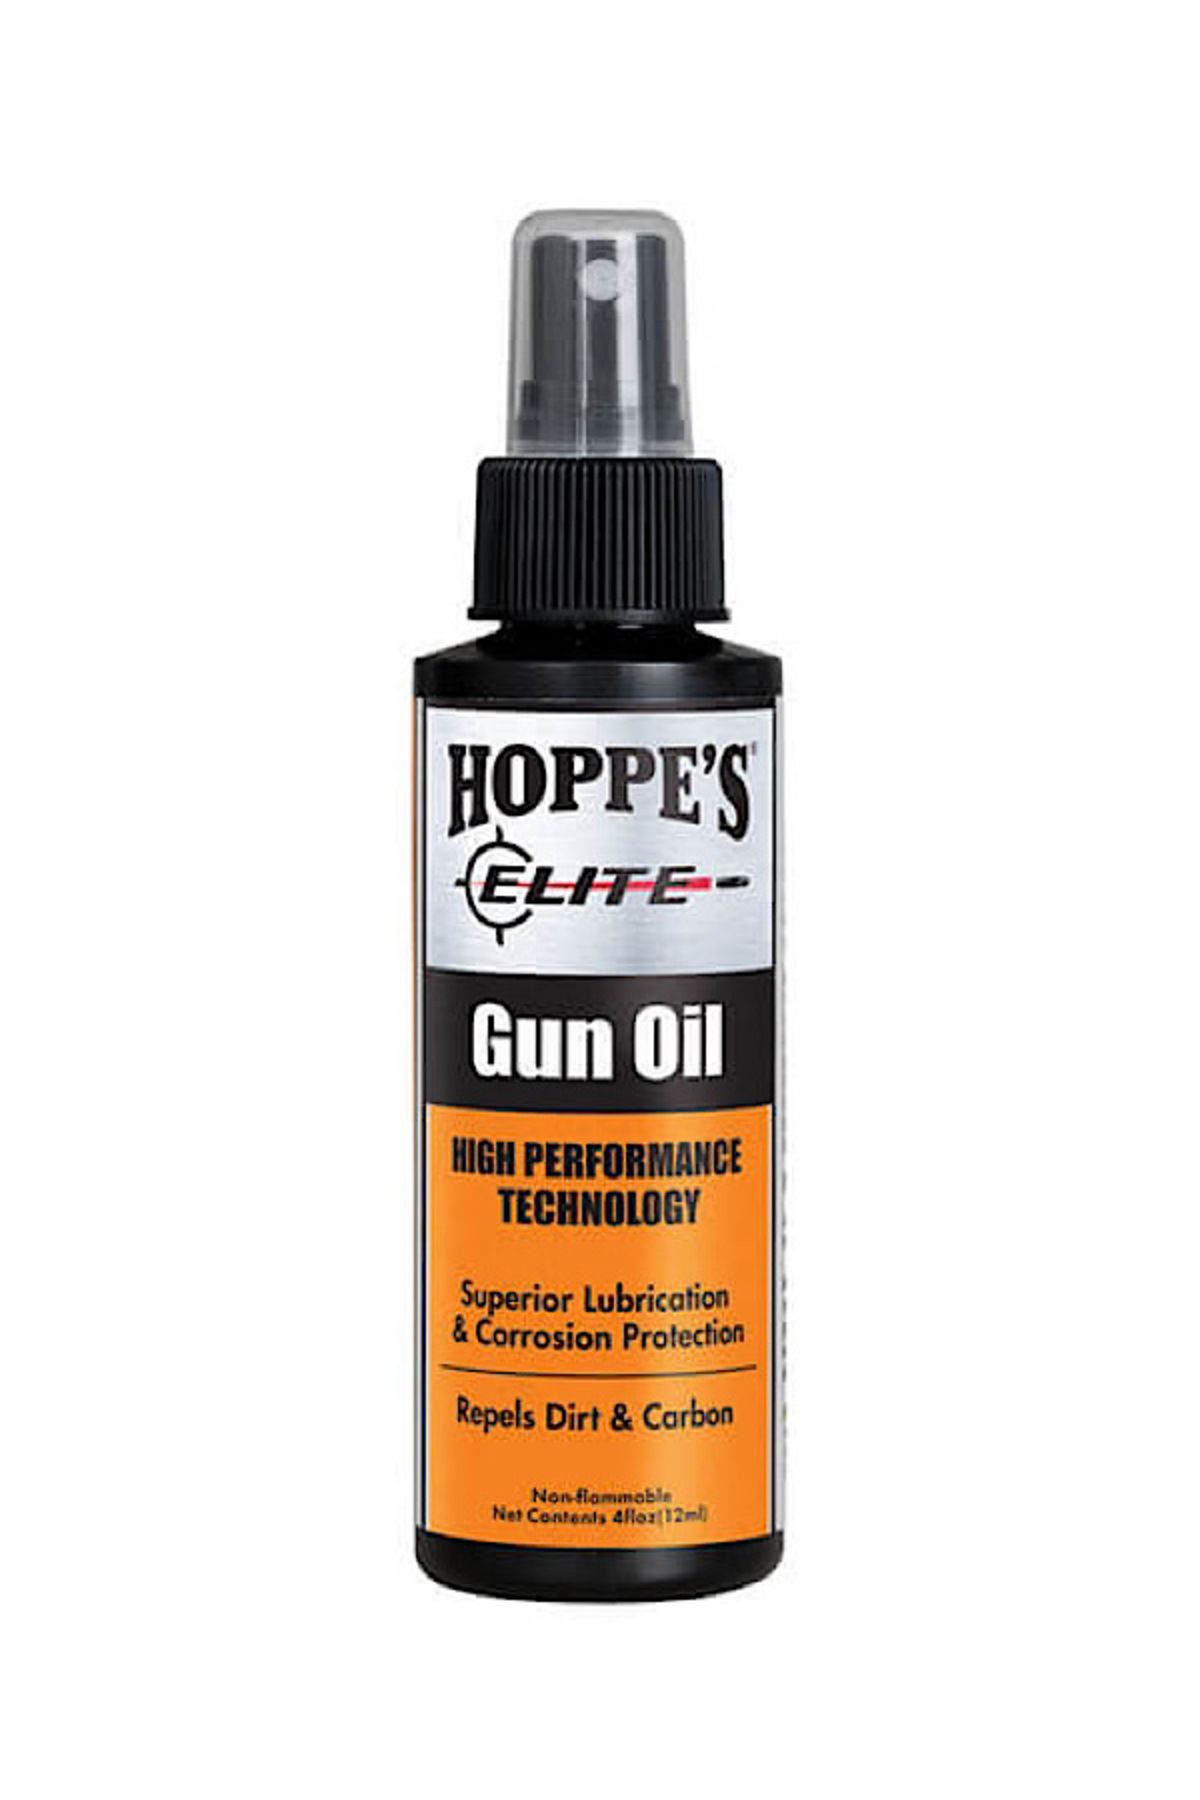 HOPPE'S Elite Silah Yağı 112 ml